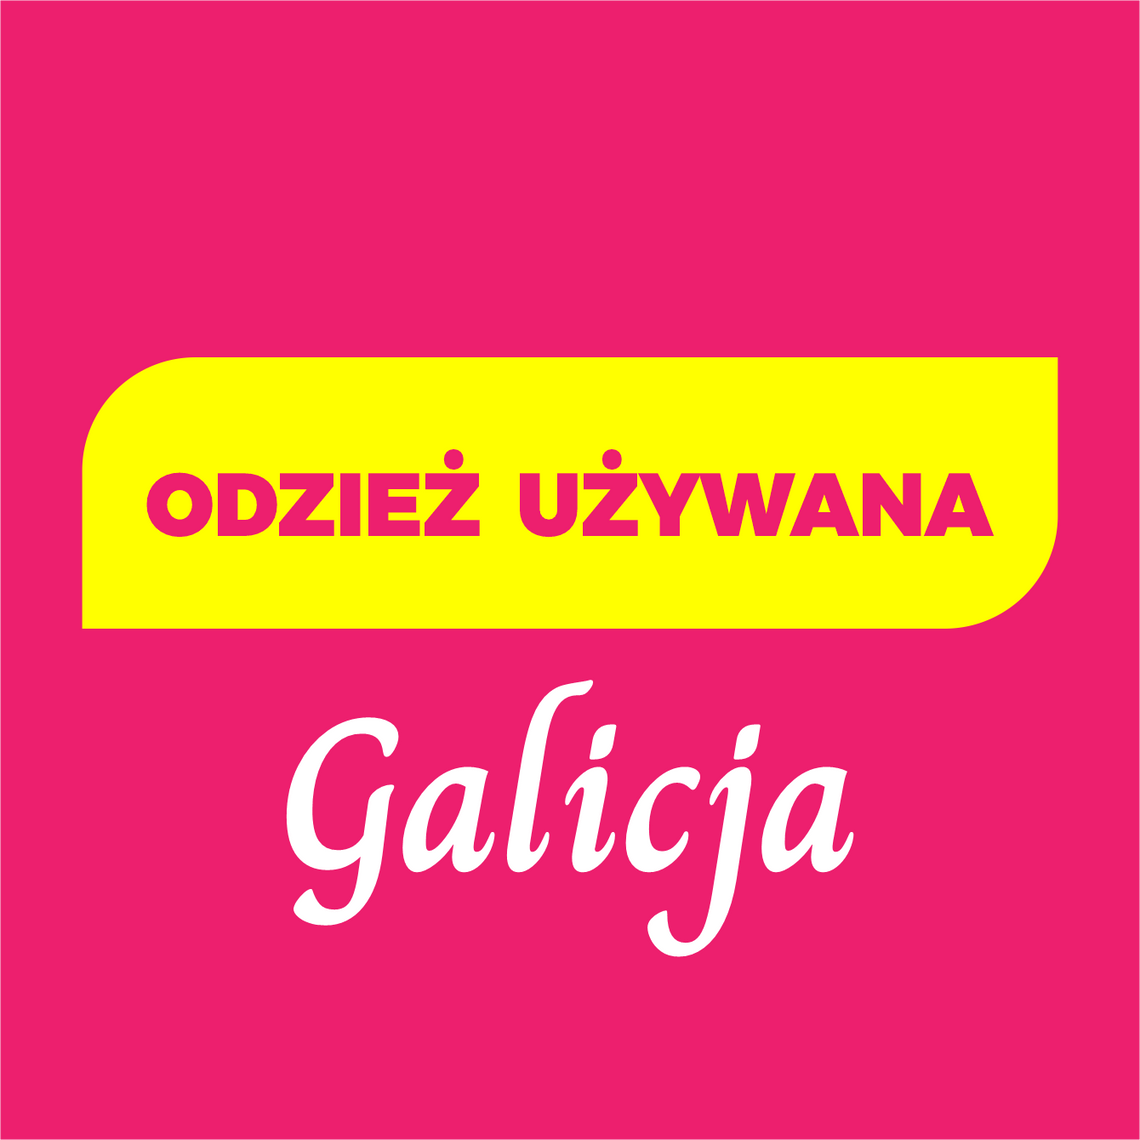 Odzież używana „Galicja”